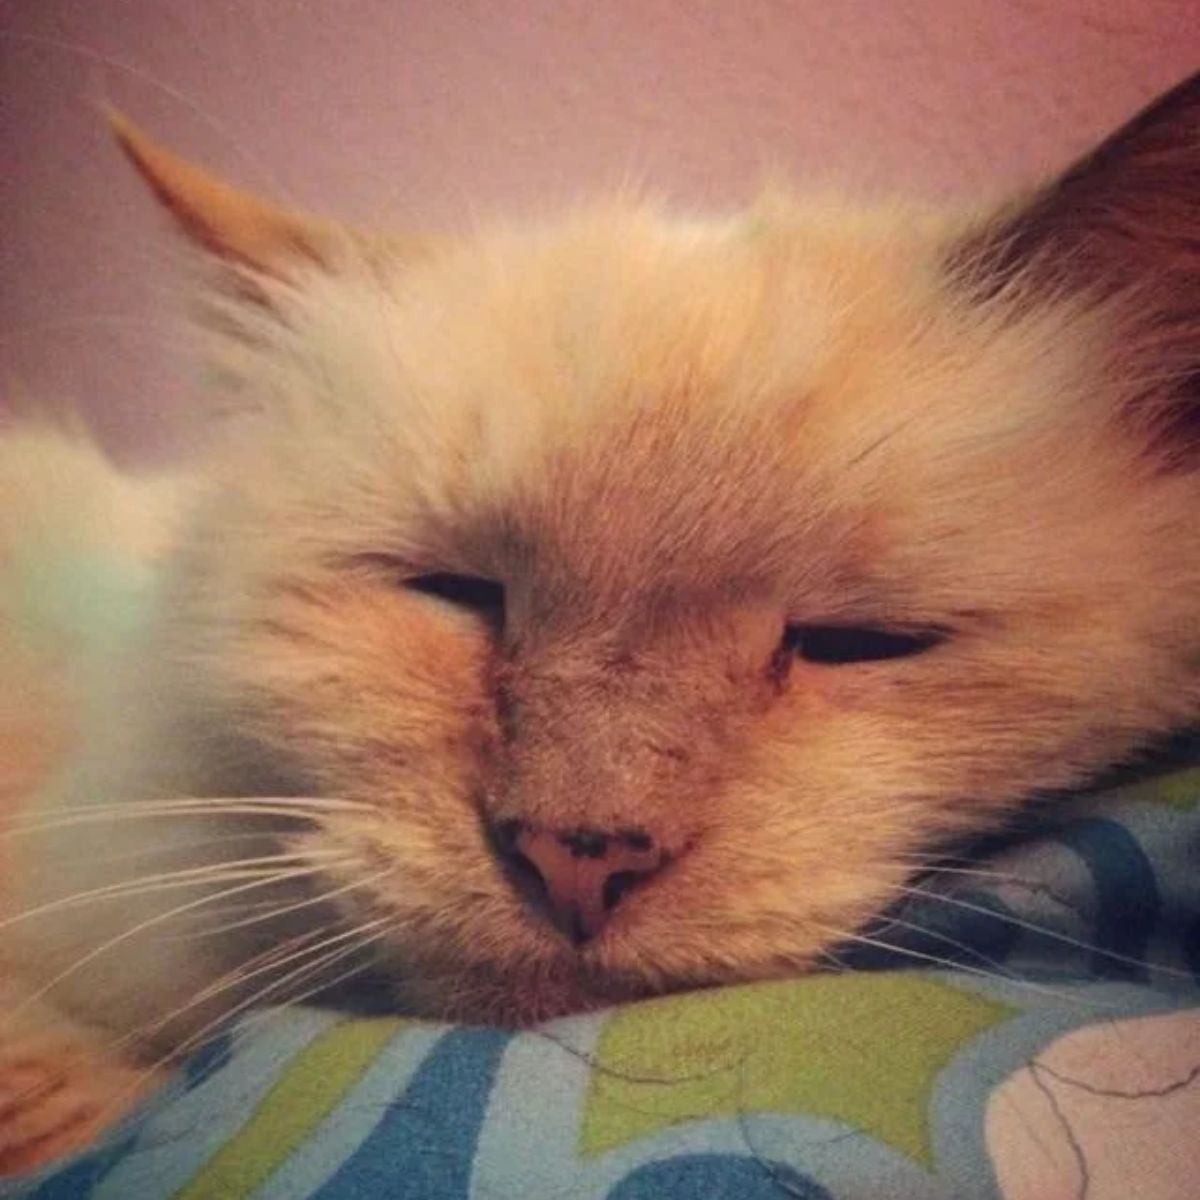 cat-sleeping-in-bed